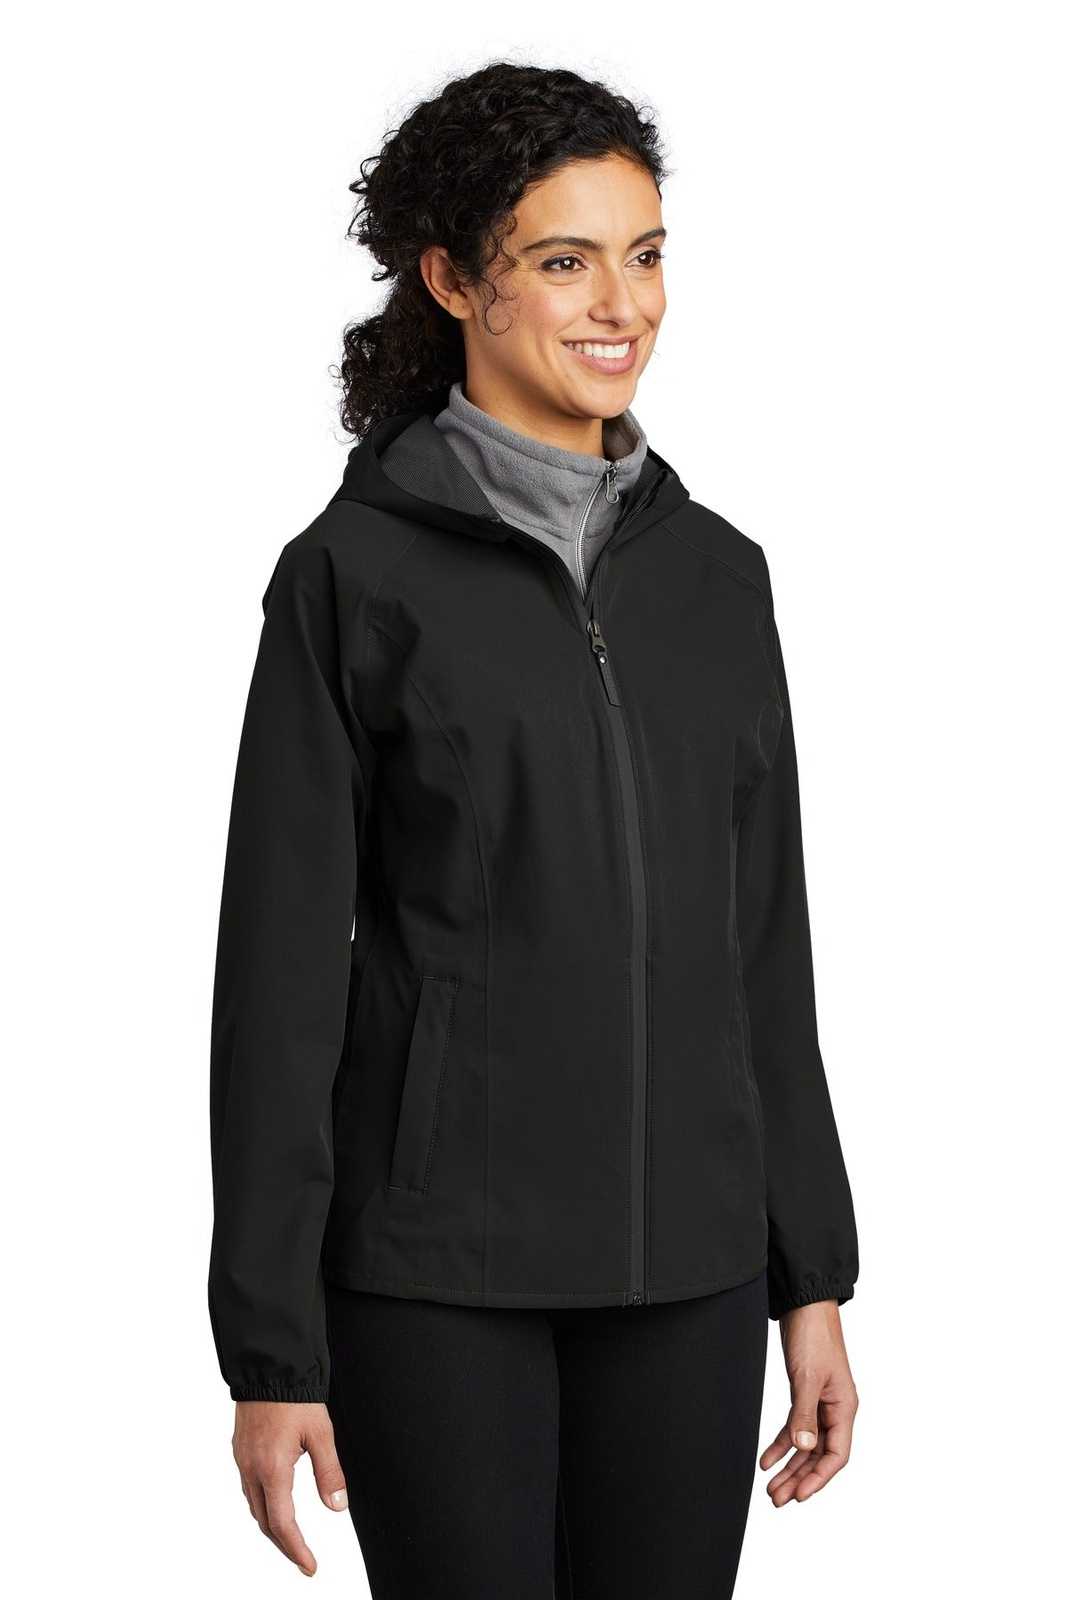 Port Authority L407 Ladies Essential Rain Jacket - Deep Black - HIT a Double - 4